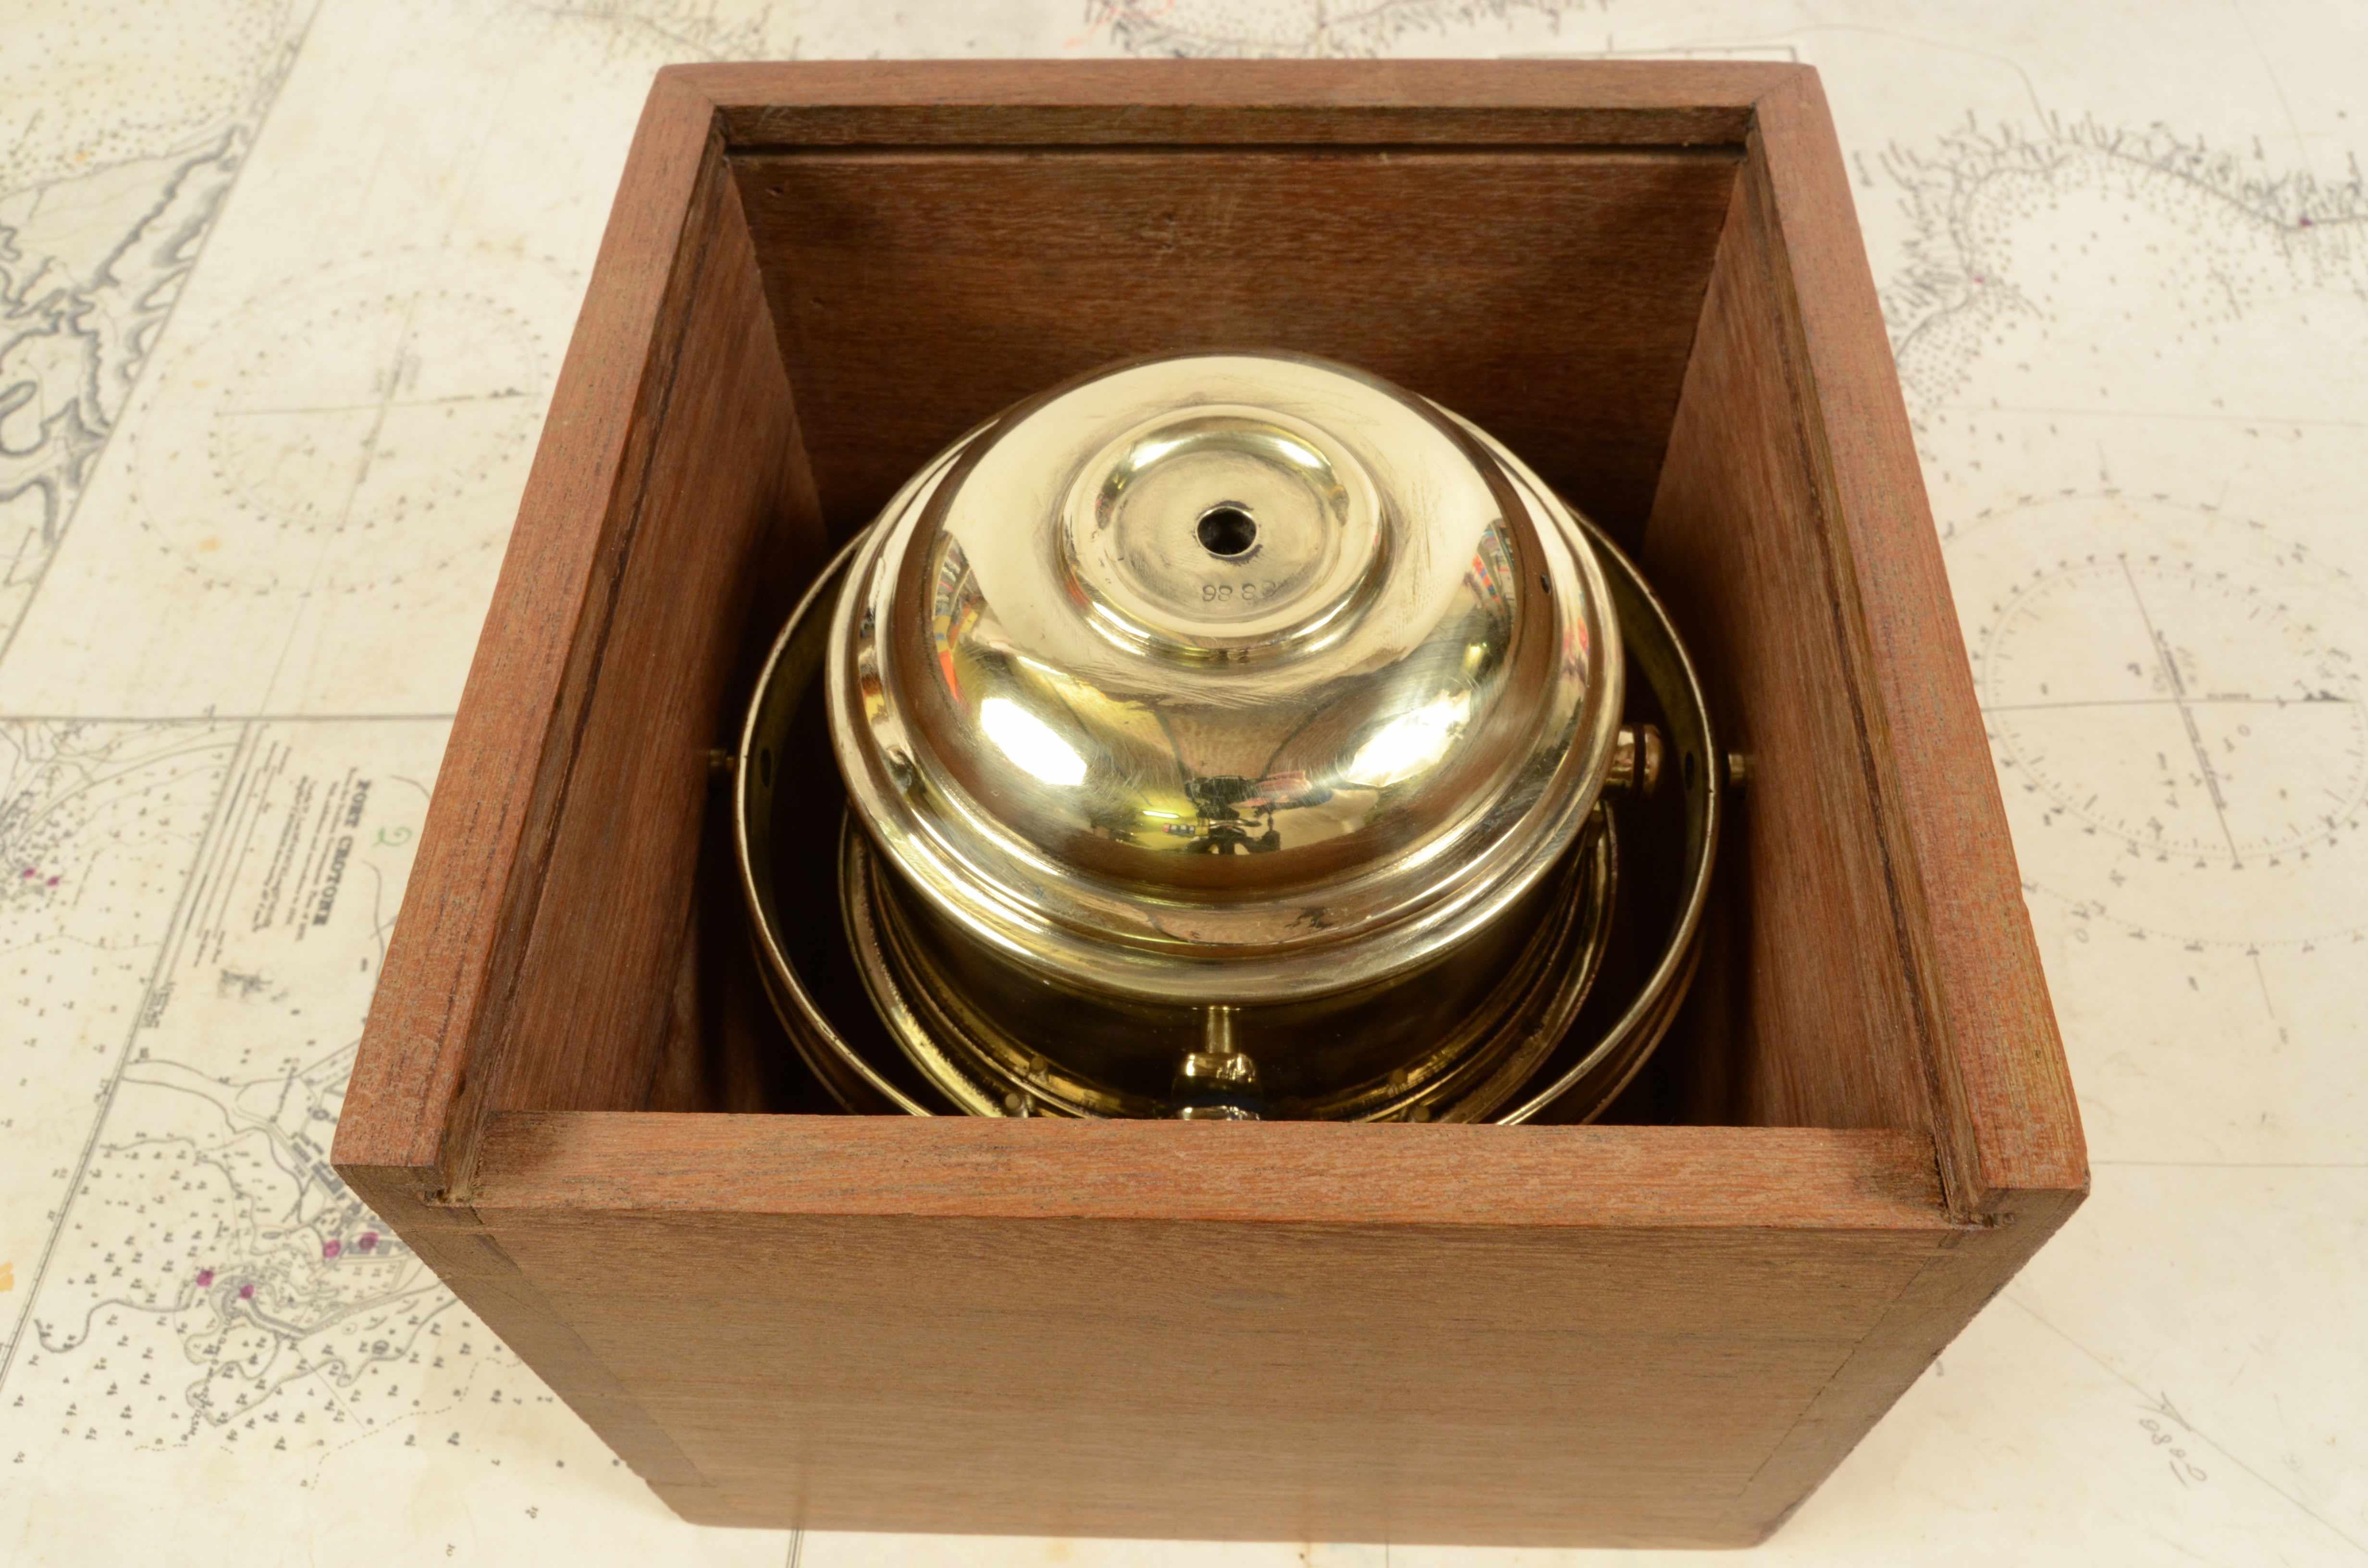 Late 19th Century 19th Century Magnetic Nautical Compass Original Box Antique Marine Nautical Tool